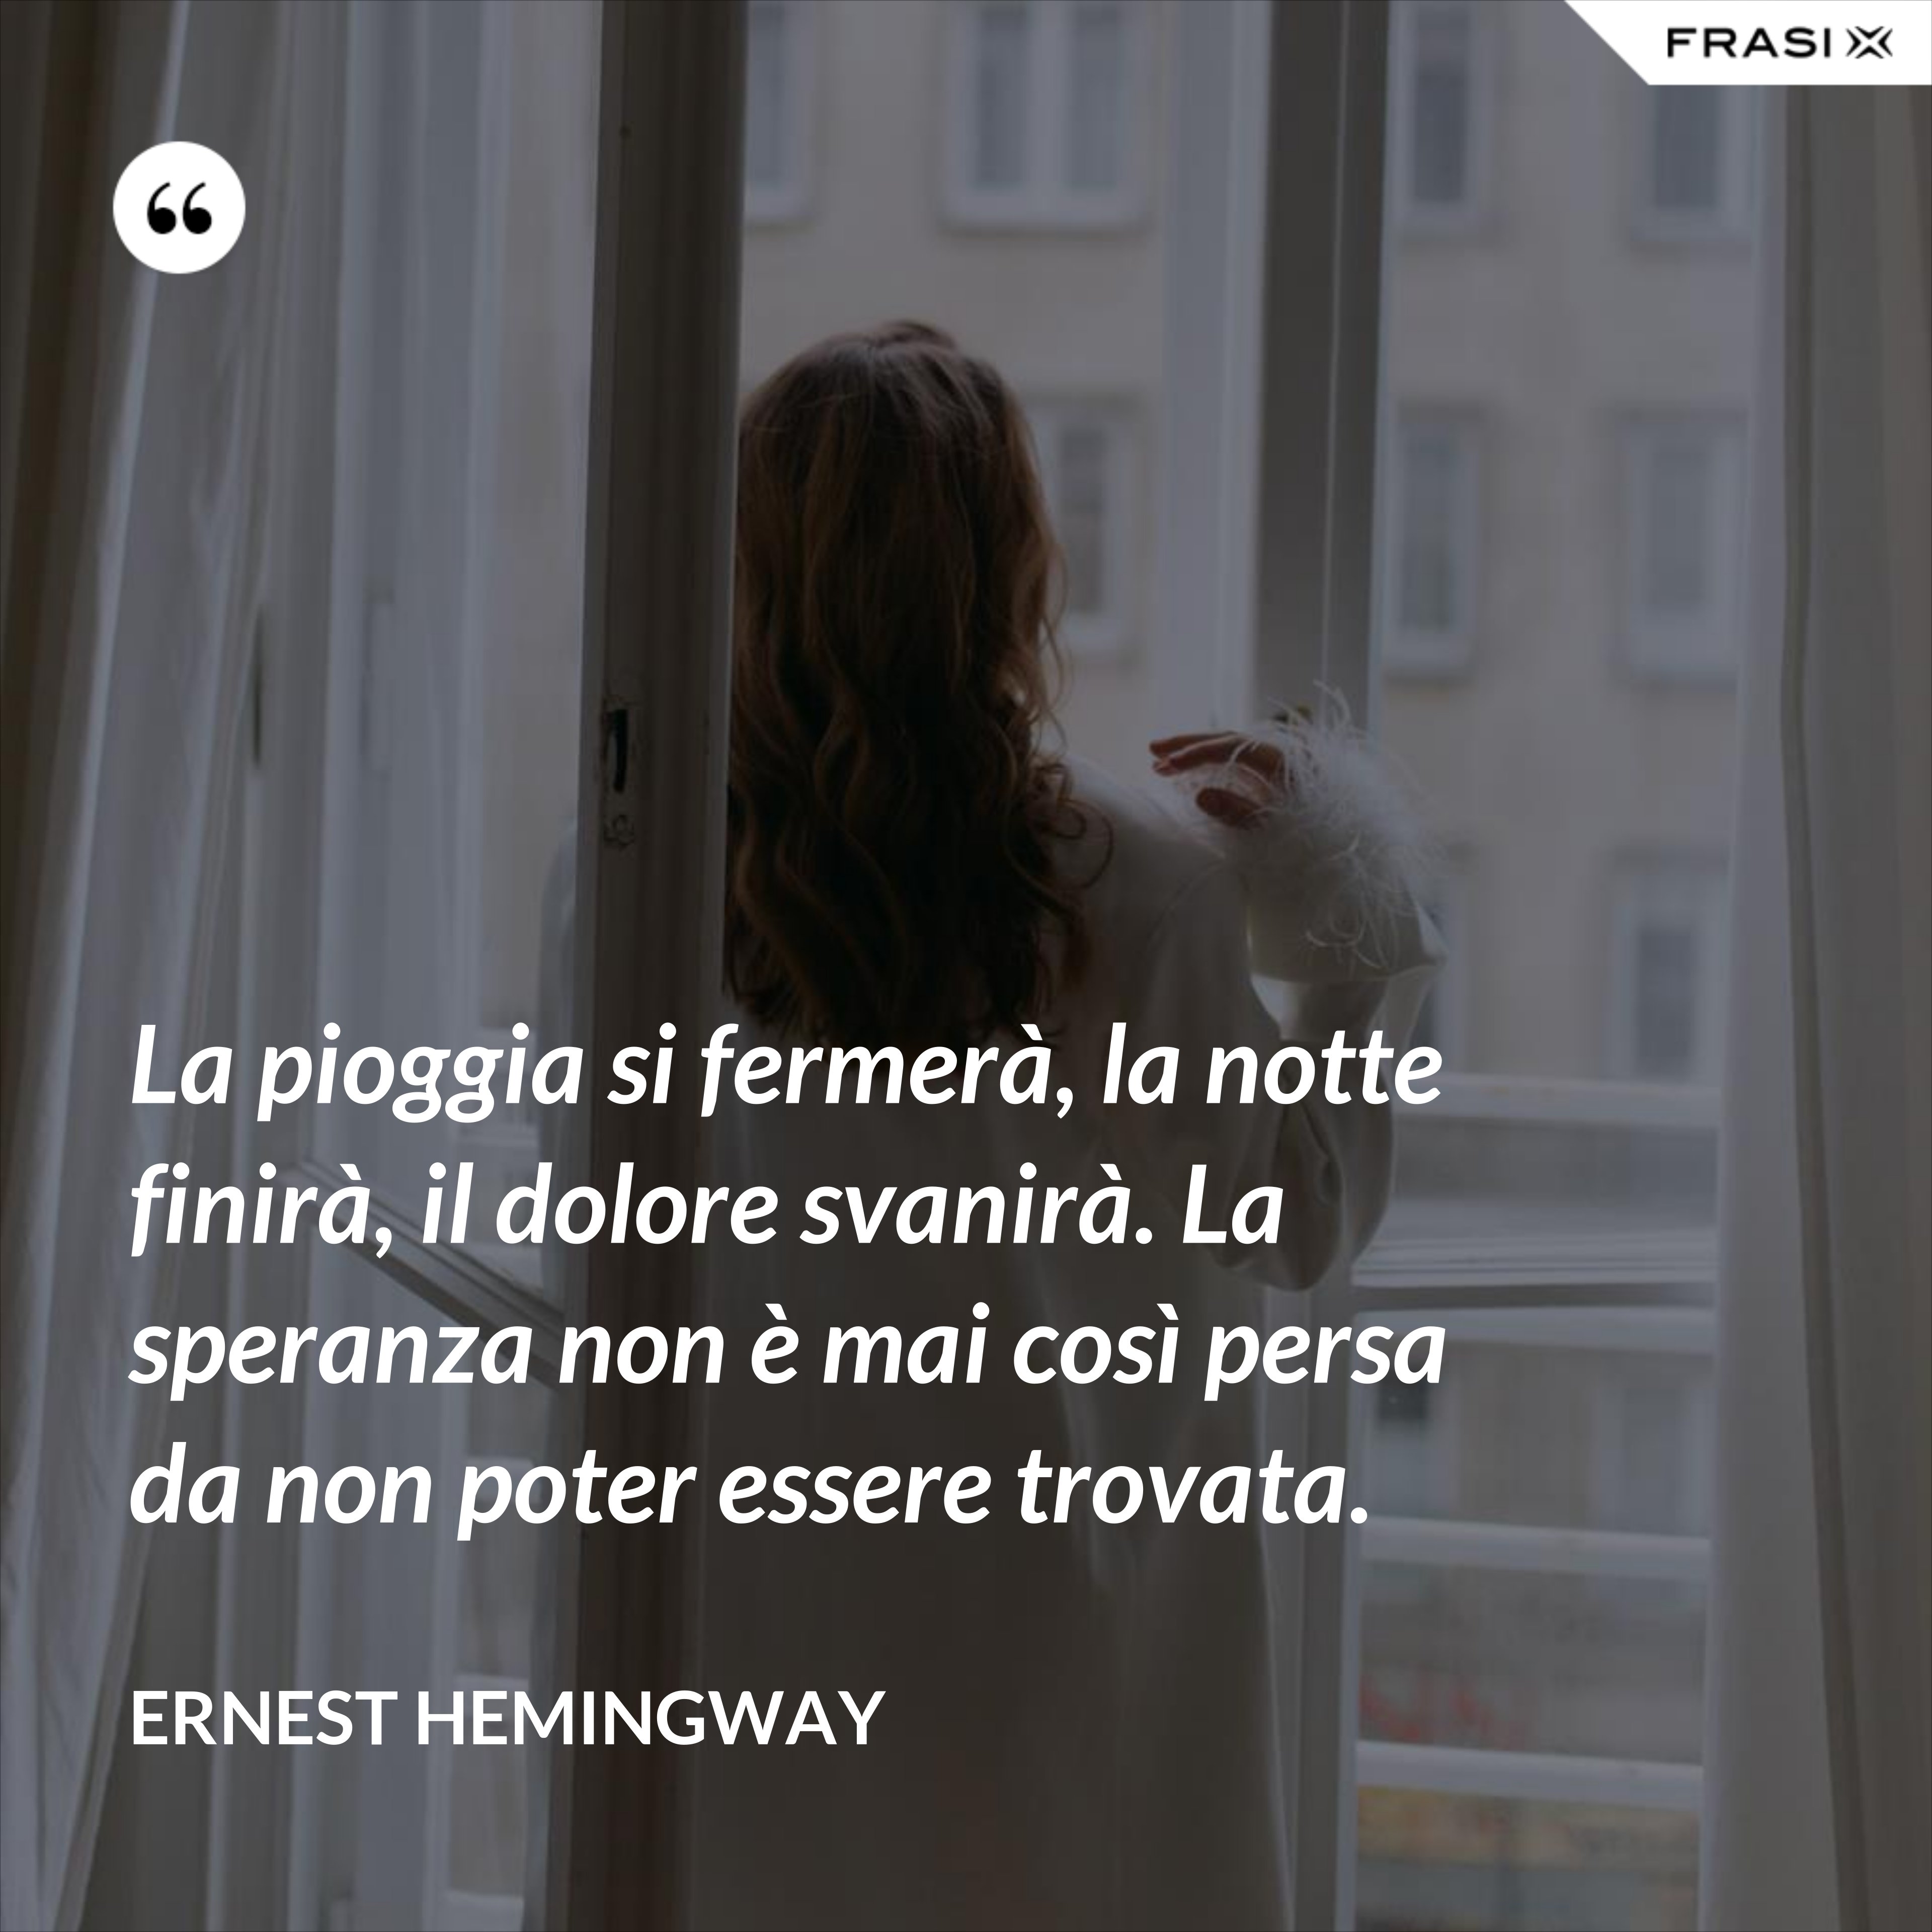 La pioggia si fermerà, la notte finirà, il dolore svanirà. La speranza non è mai così persa da non poter essere trovata. - Ernest Hemingway